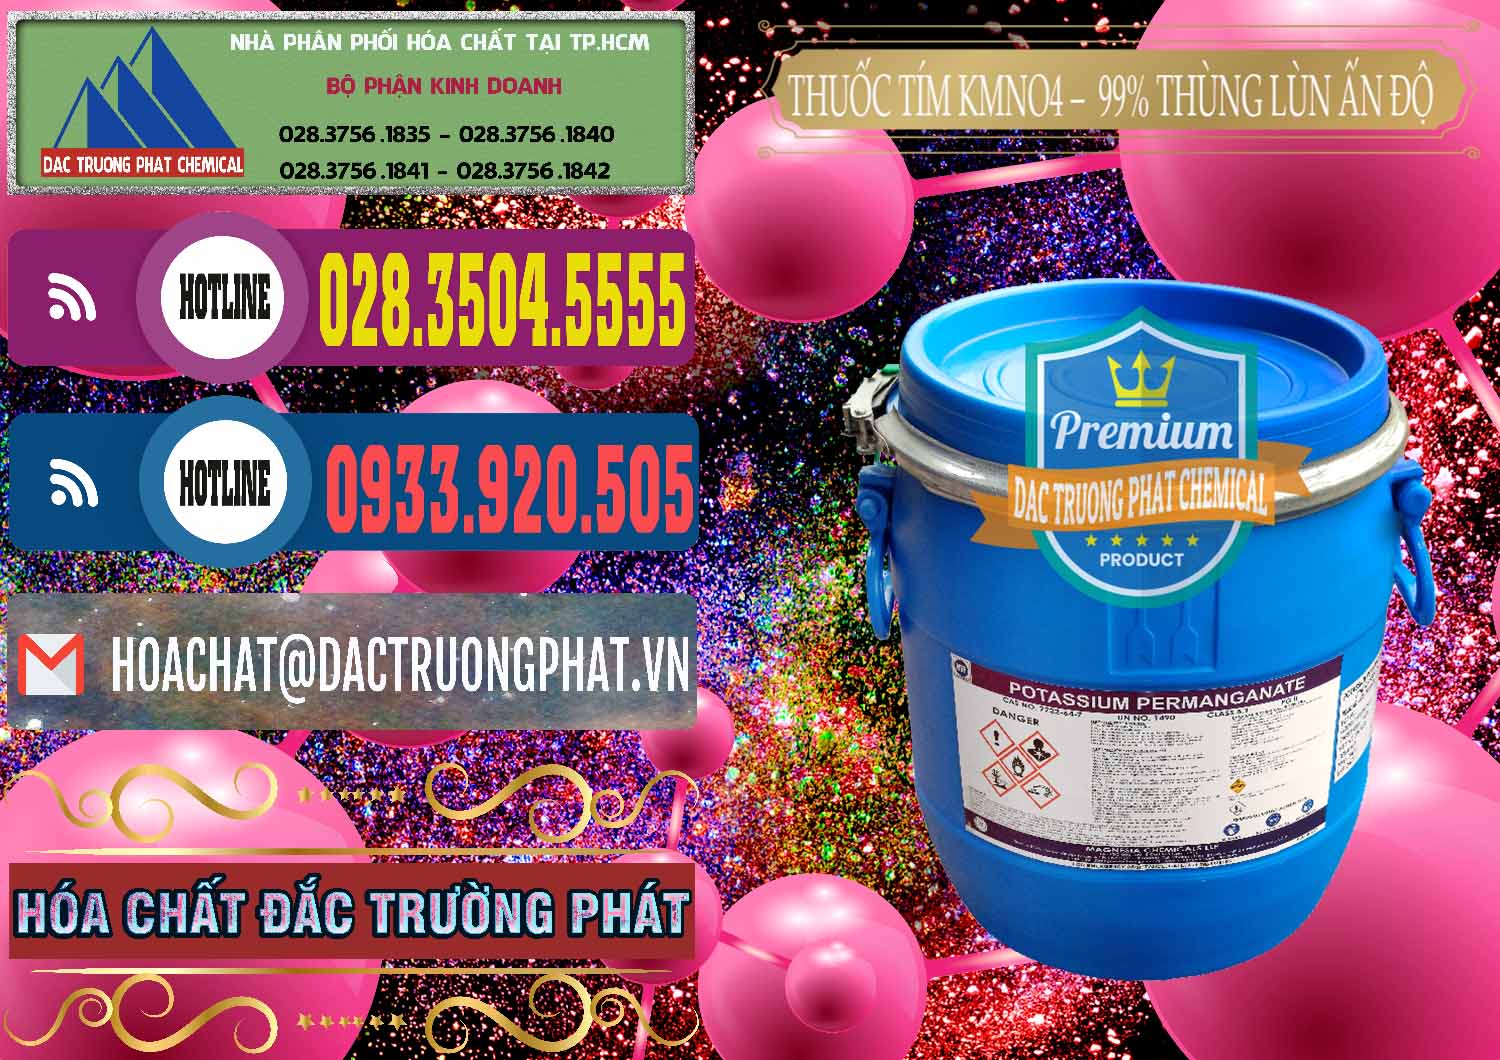 Nơi chuyên bán và phân phối Thuốc Tím - KMNO4 Thùng Lùn 99% Magnesia Chemicals Ấn Độ India - 0165 - Cty bán và cung cấp hóa chất tại TP.HCM - muabanhoachat.com.vn